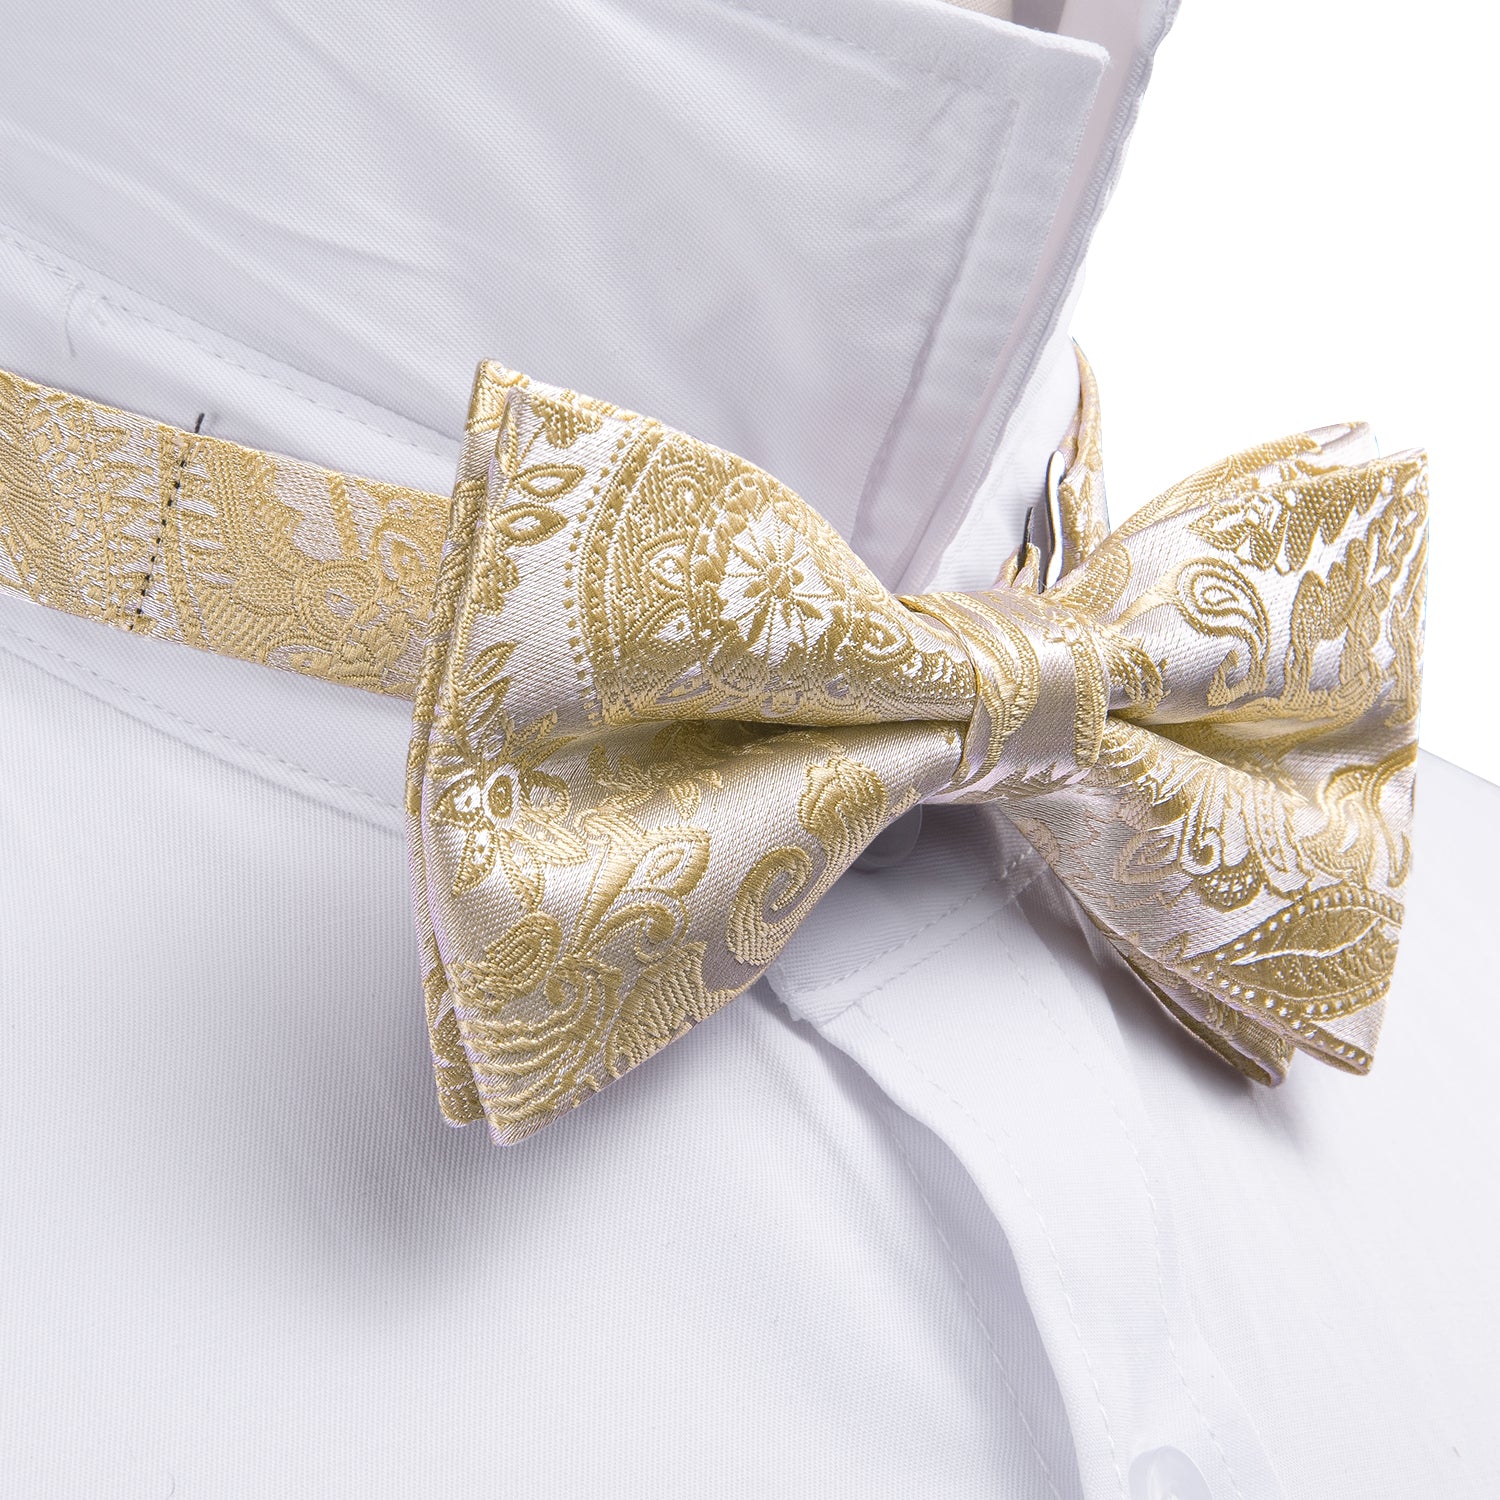 Cream Color Paisley Pre-tied Bow Tie Hanky Cufflinks Set